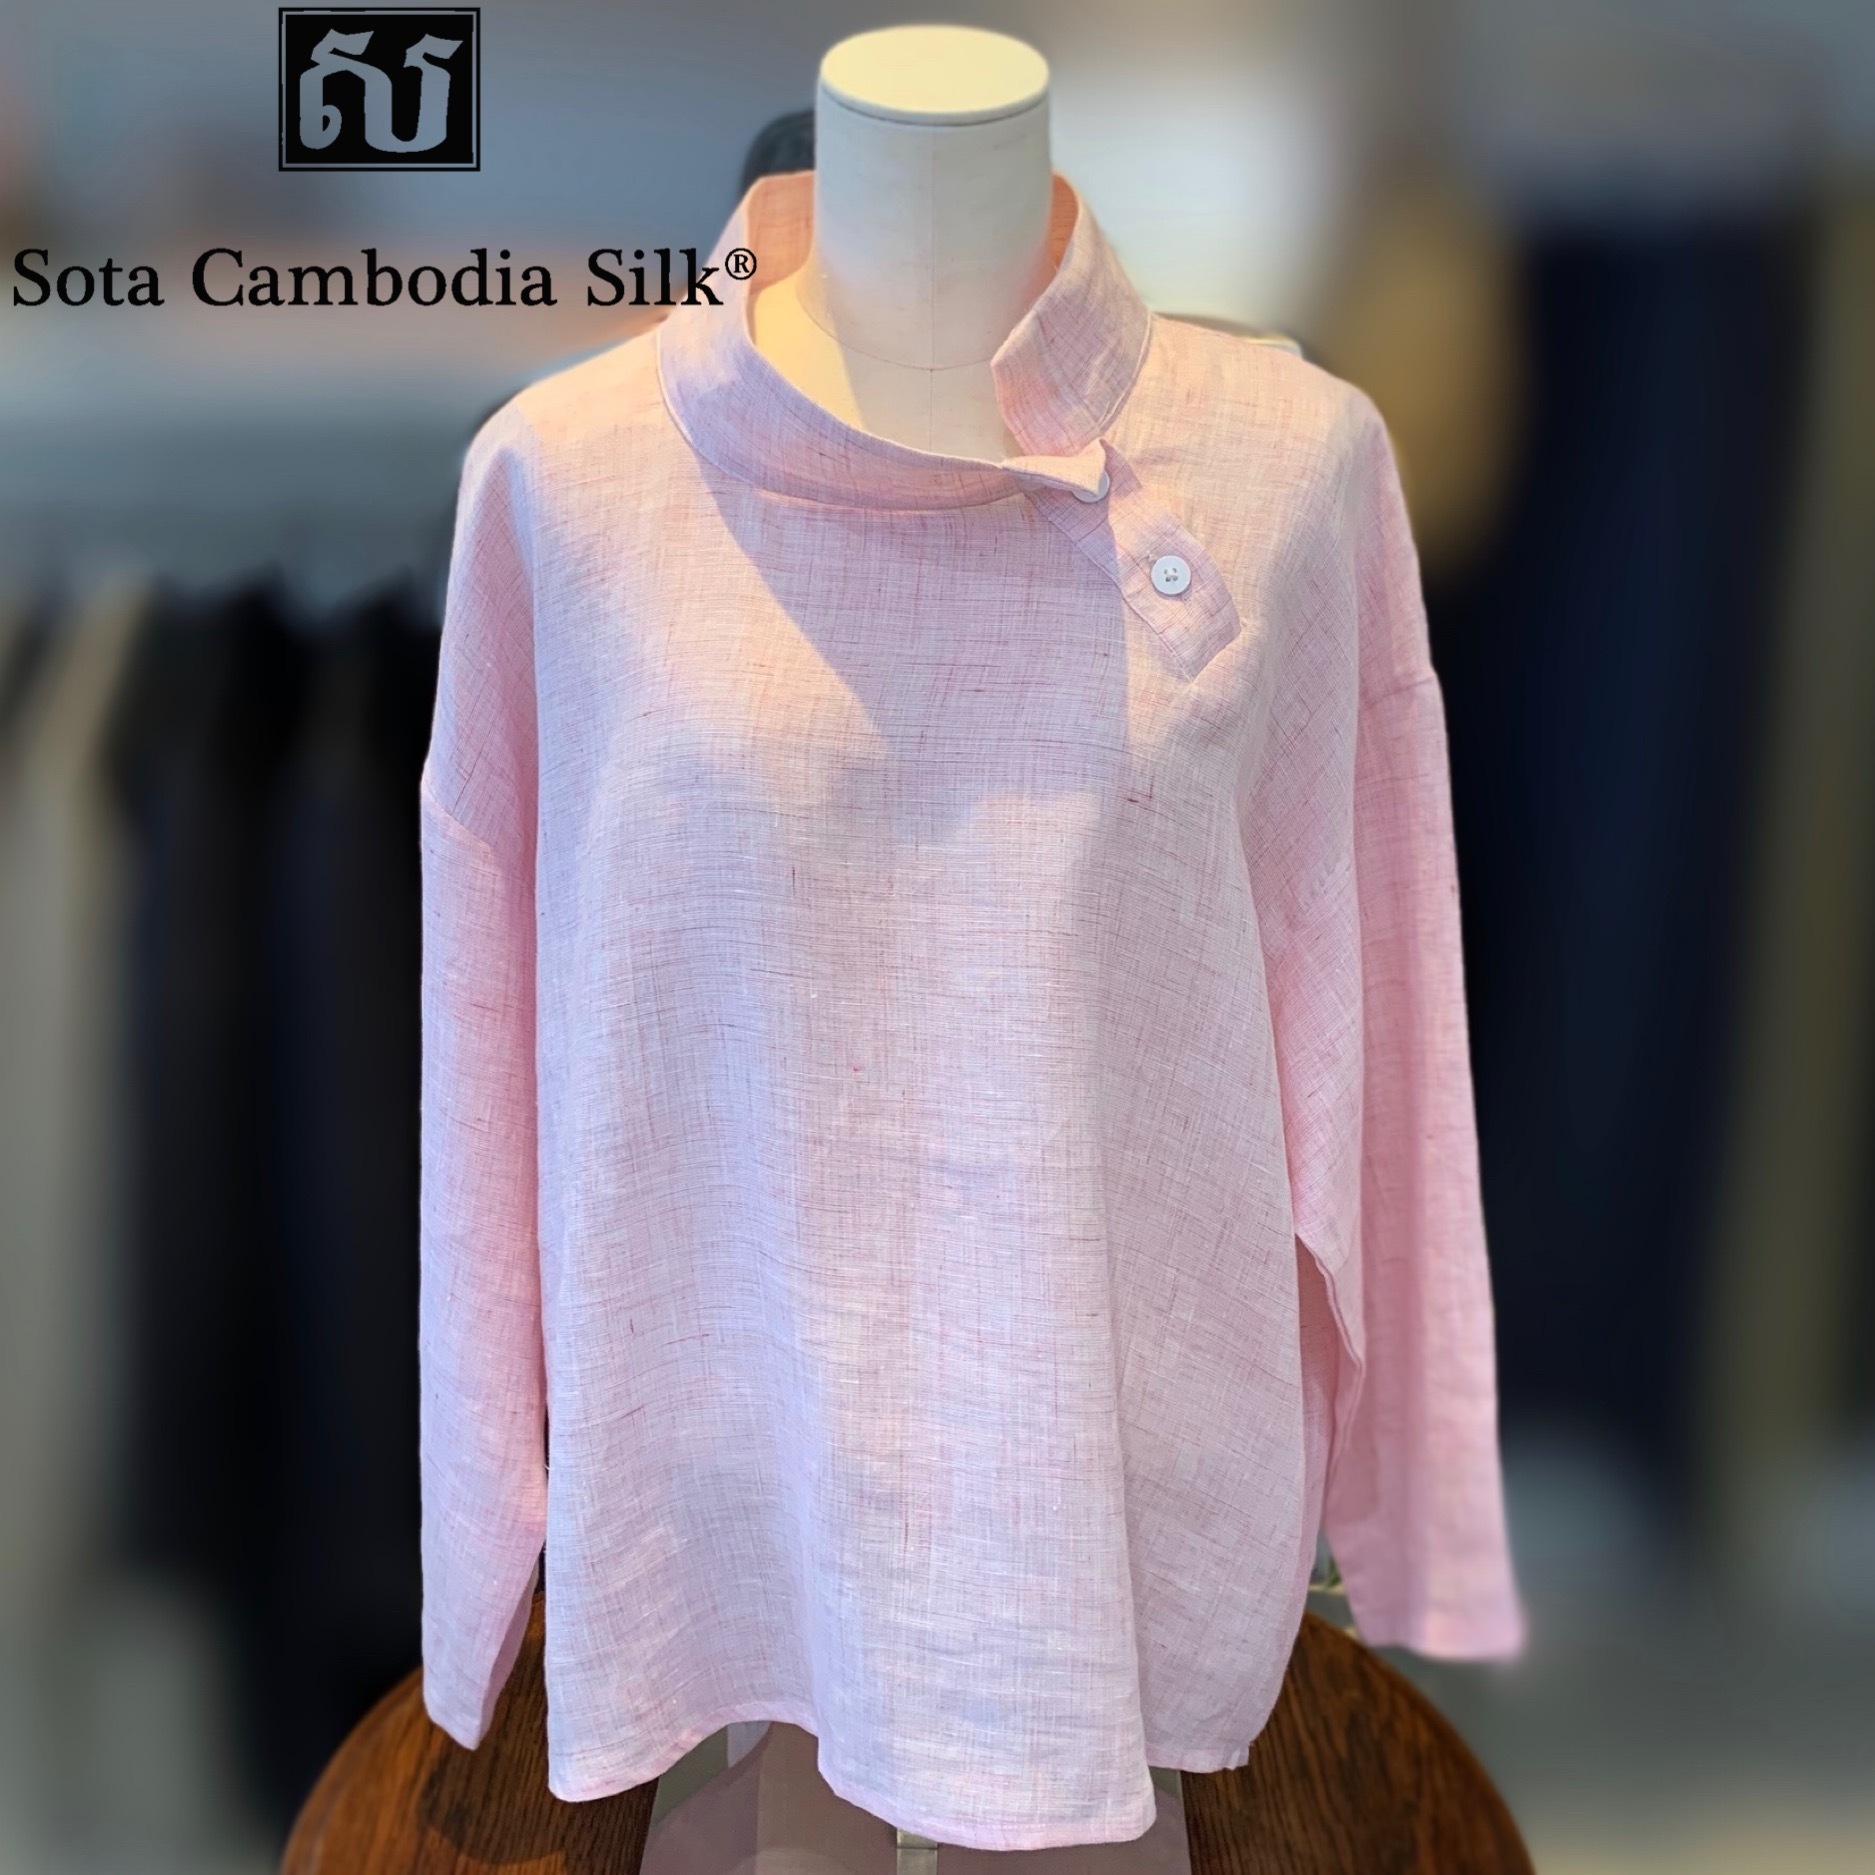 ブラウス 可愛いブラウス 春ファッション 夏ファッション ピンク 母の日 リネン ソウタカンボジアシルク Sota Cambodia Silk